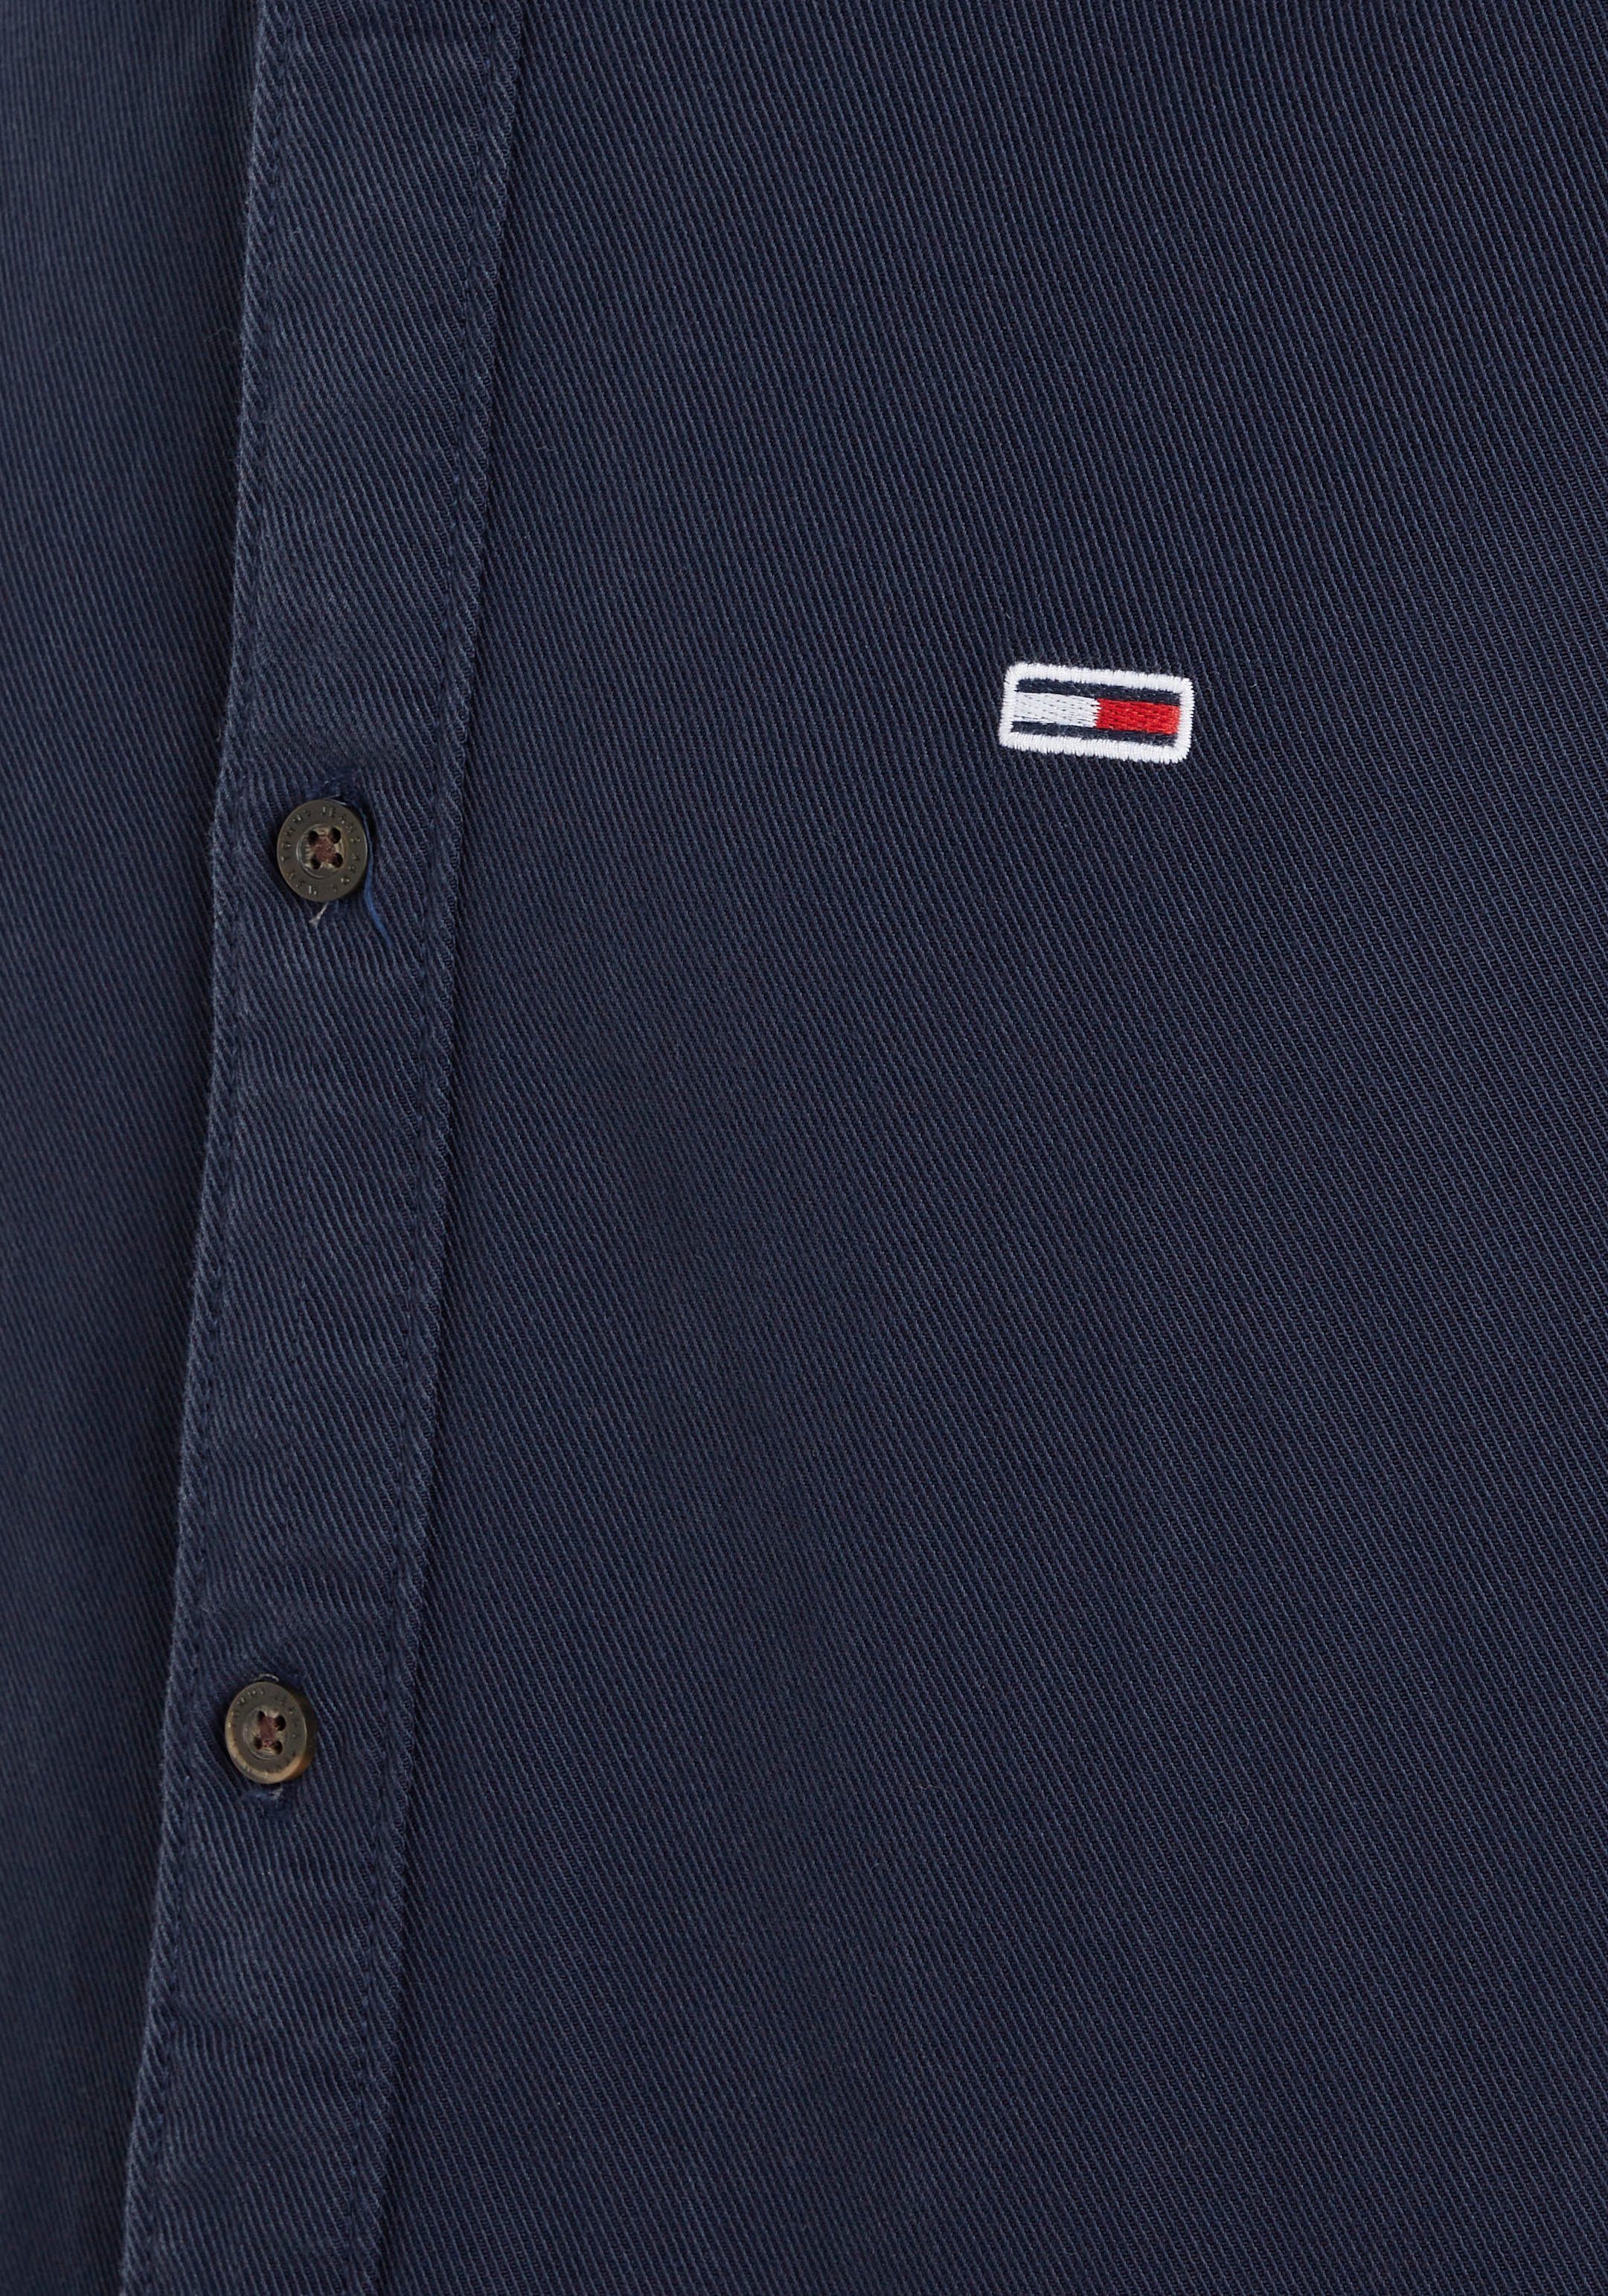 durchgehender Langarmhemd Knopfleiste ESSENTIAL Jeans Tommy SHIRT blue mit REG TJM